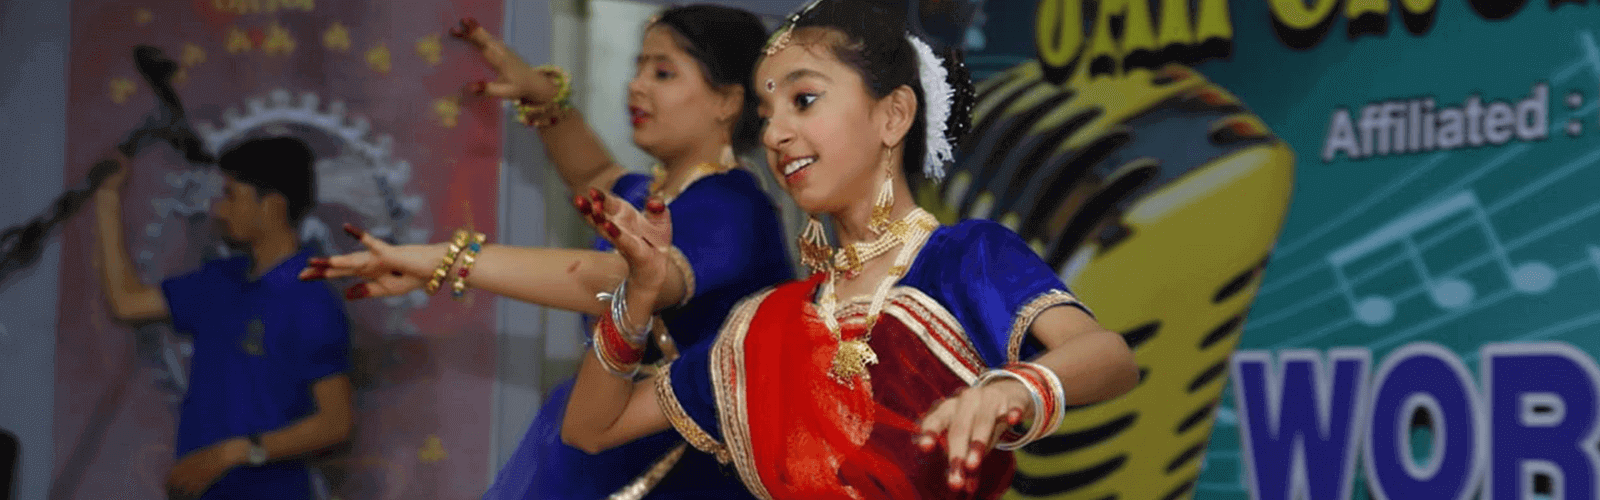 kathak dance classes jaipur